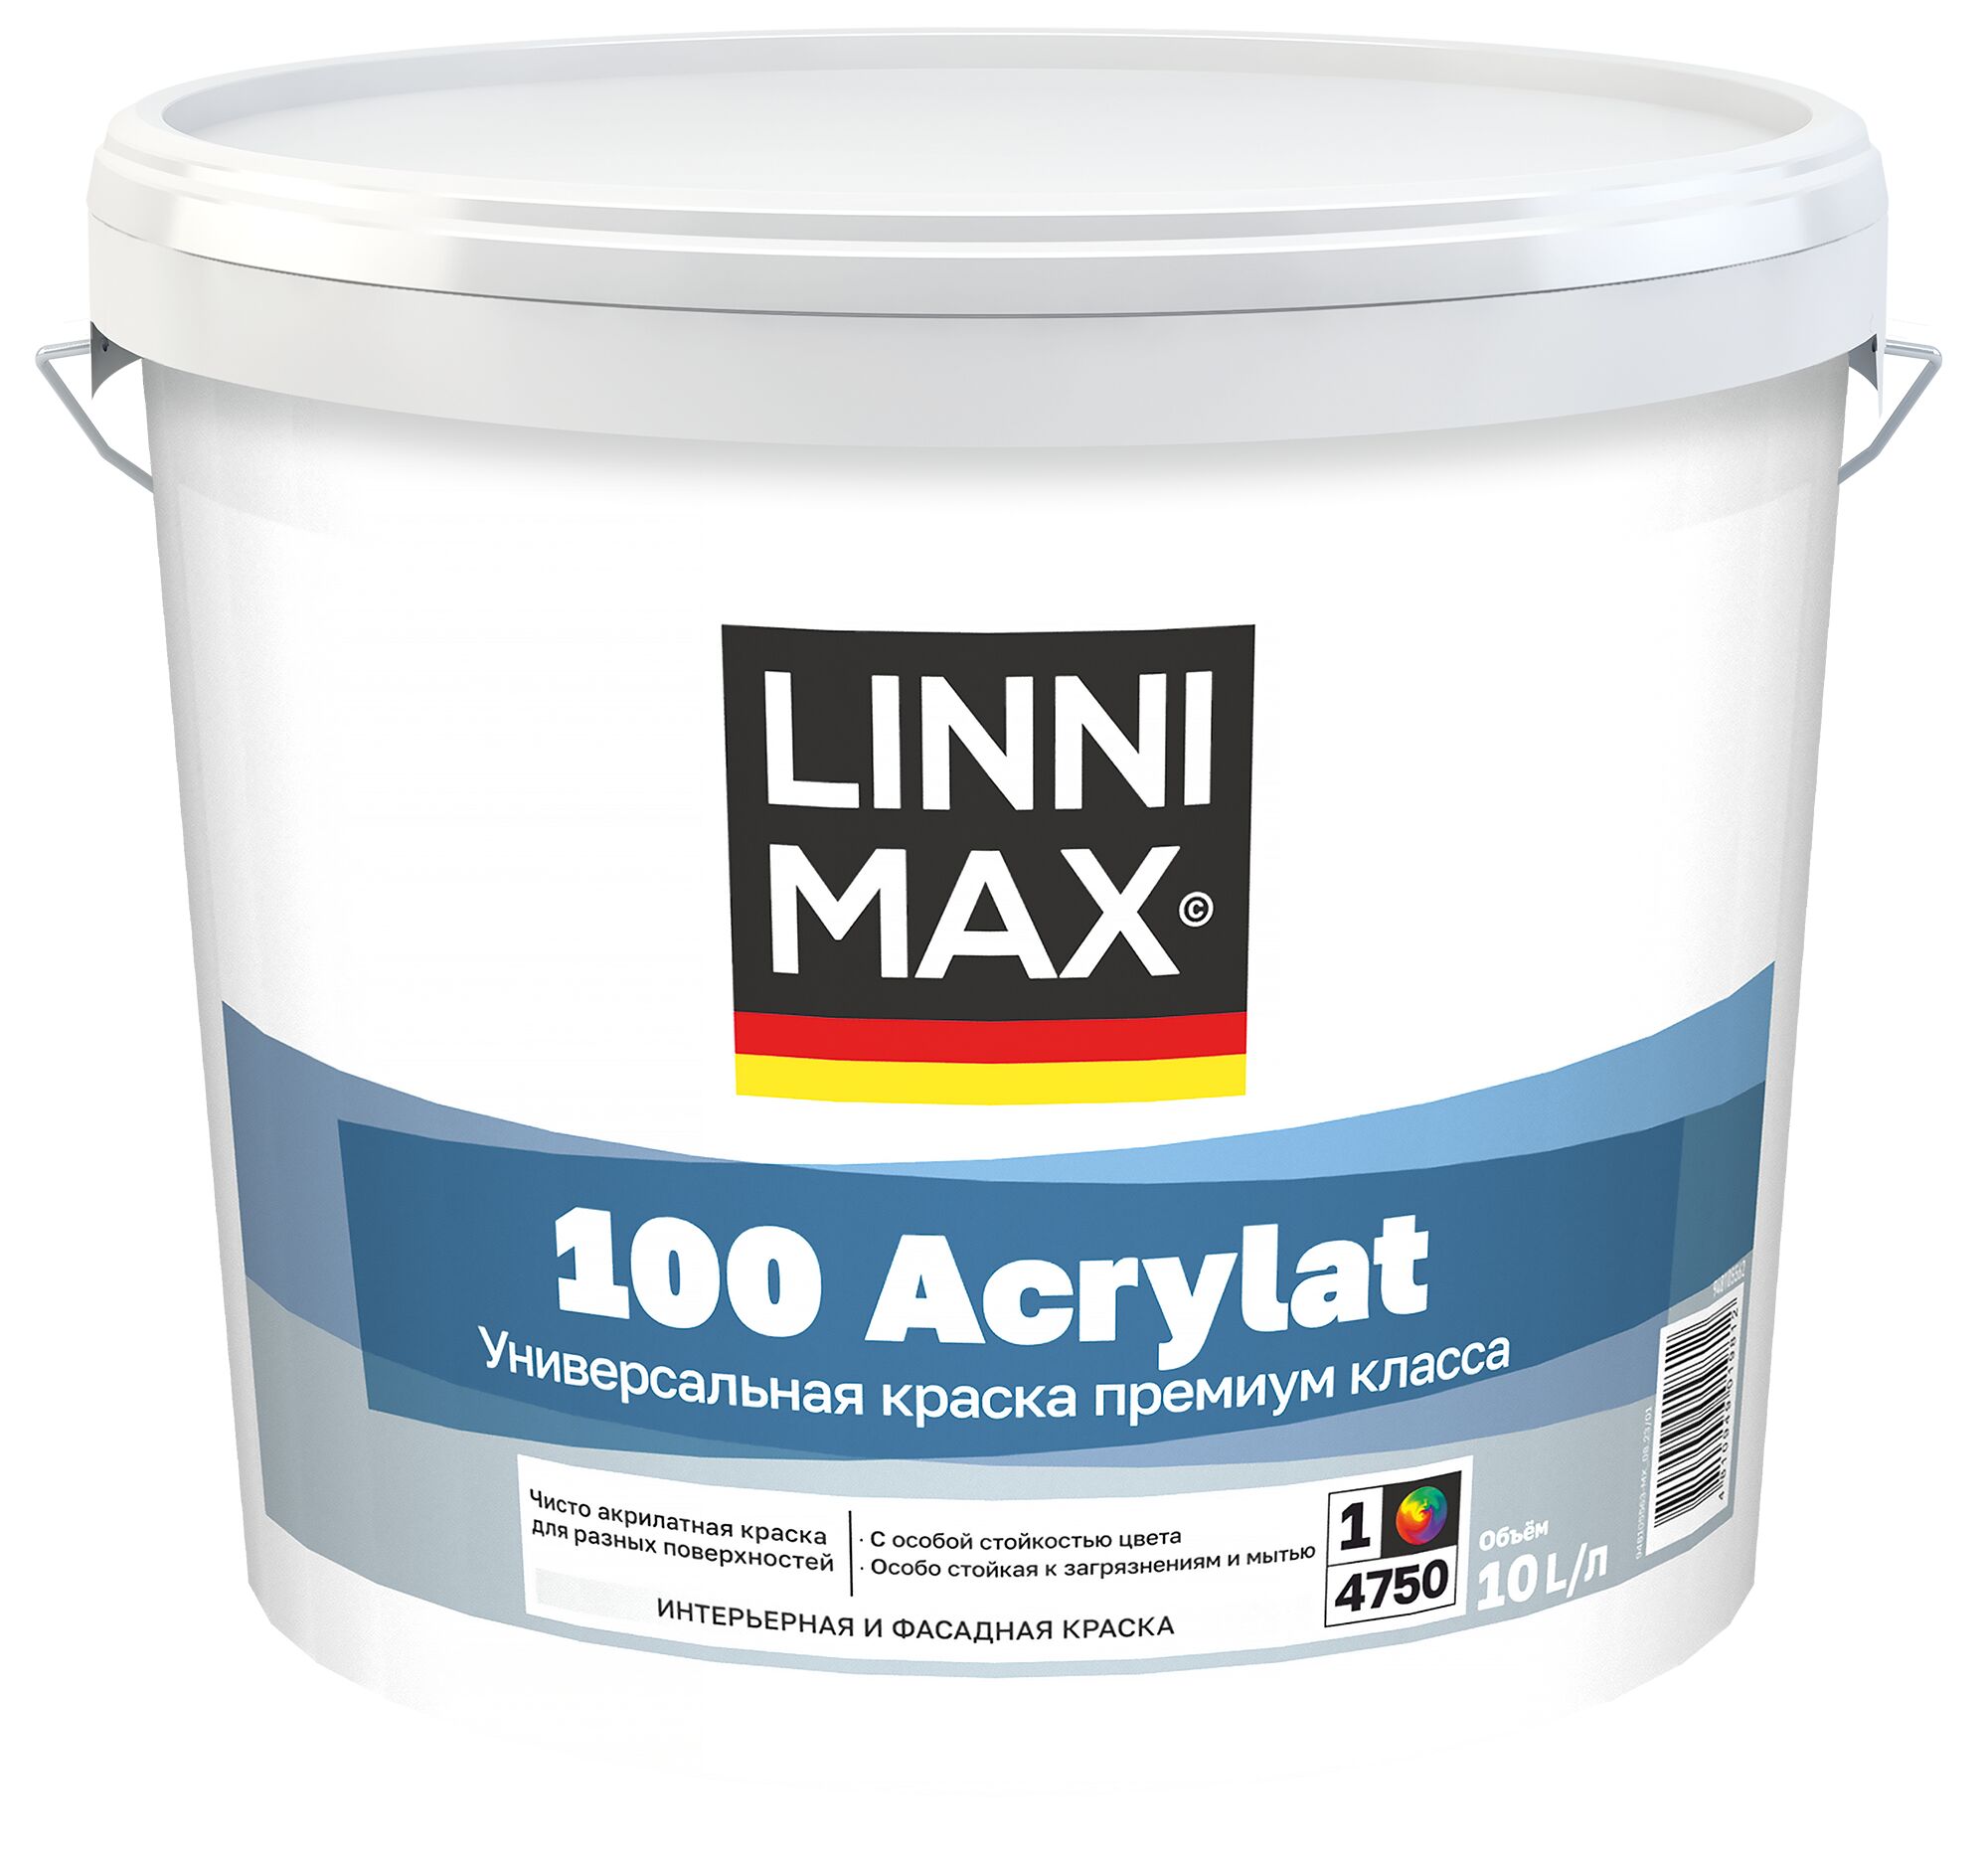 100 Acrylat 10л Краска водно-дисперсионная для наружных и внутренних работ База1 LINNIMAX, 100 Acrylat 10л Краска водно-дисперсионная для наружных и внутренних работ База1 LINNIMAX